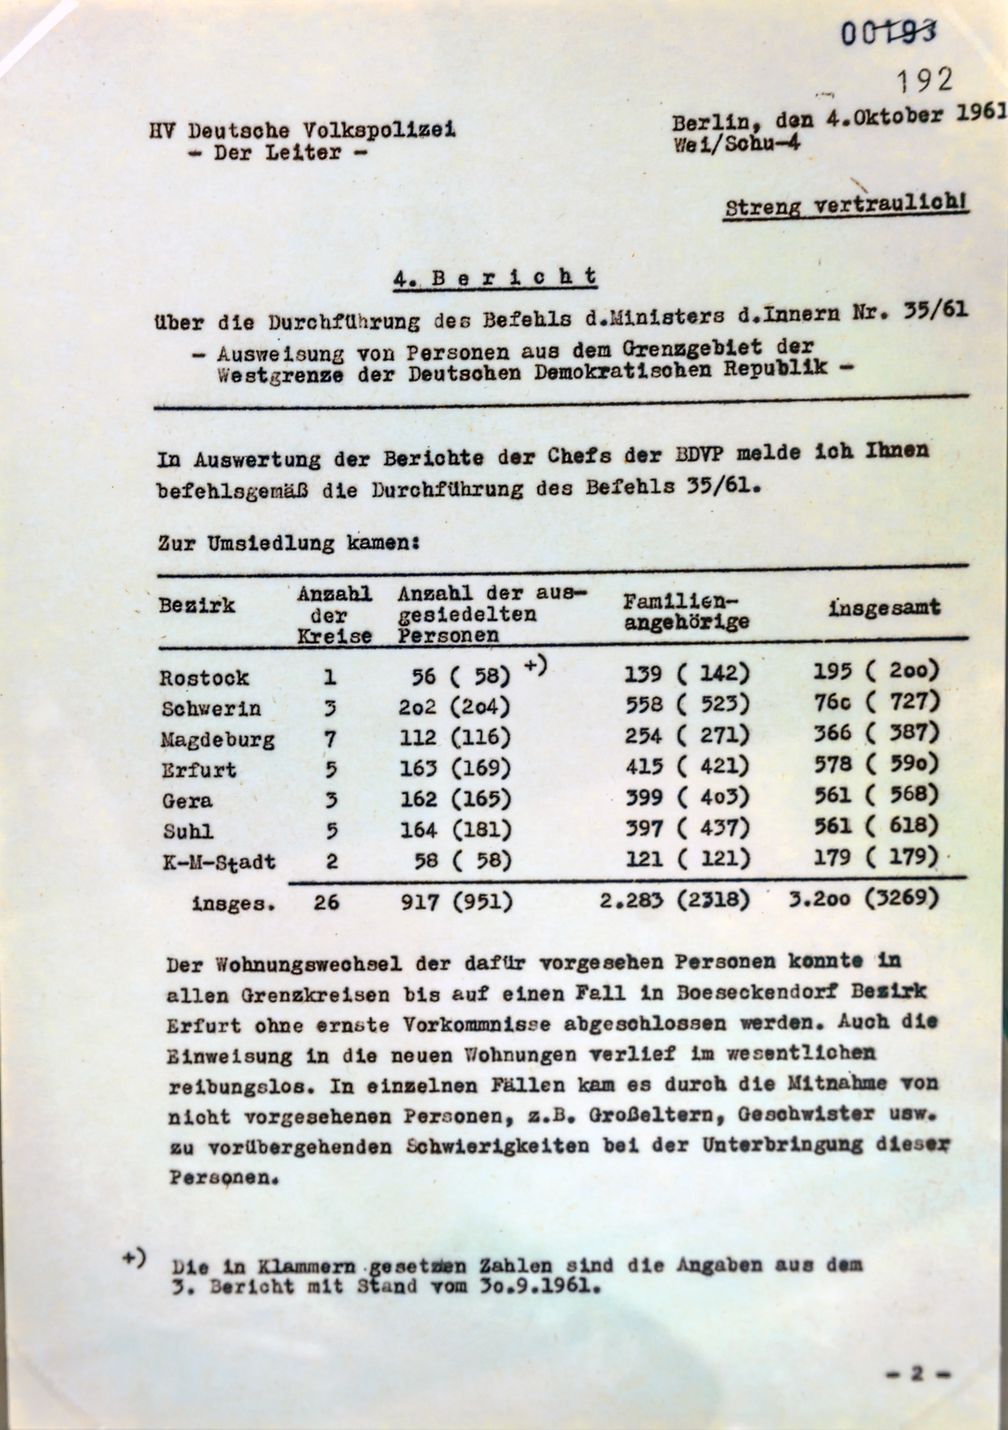 Aktion Ungeziefer bezeichnet eine große, generalstabsmäßig angelegte Operation der DDR, die im Juni 1952 mit dem Ziel durchgeführt wurde, in politischer Hinsicht als unzuverlässig eingeschätzte Personen aus dem Sperrgebiet entlang der innerdeutschen Grenze zu entfernen.